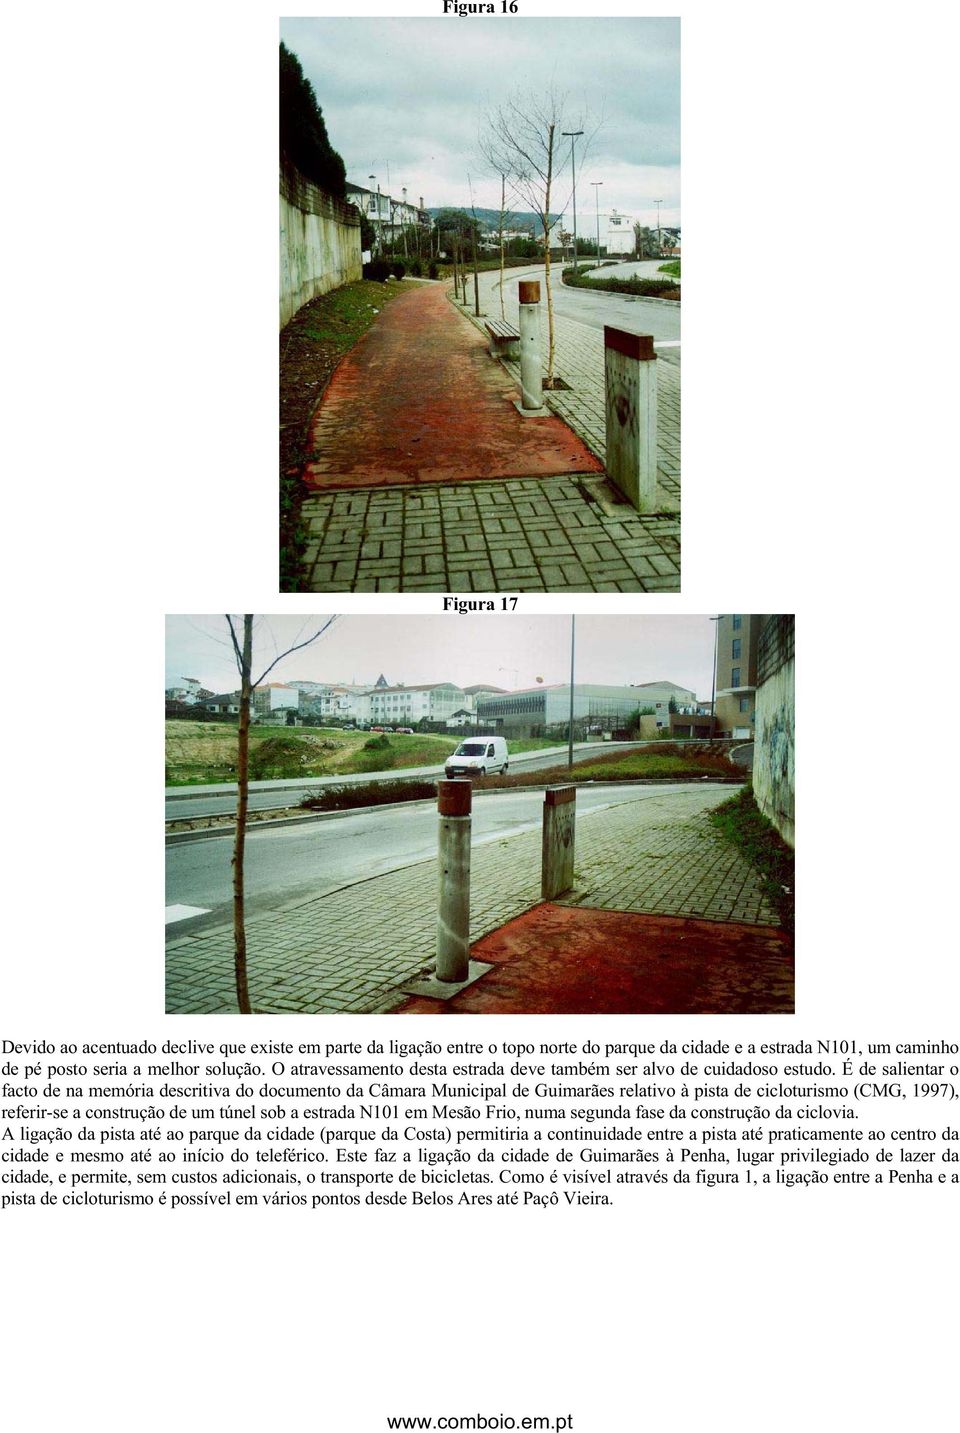 É de salientar o facto de na memória descritiva do documento da Câmara Municipal de Guimarães relativo à pista de cicloturismo (CMG, 1997), referir-se a construção de um túnel sob a estrada N101 em